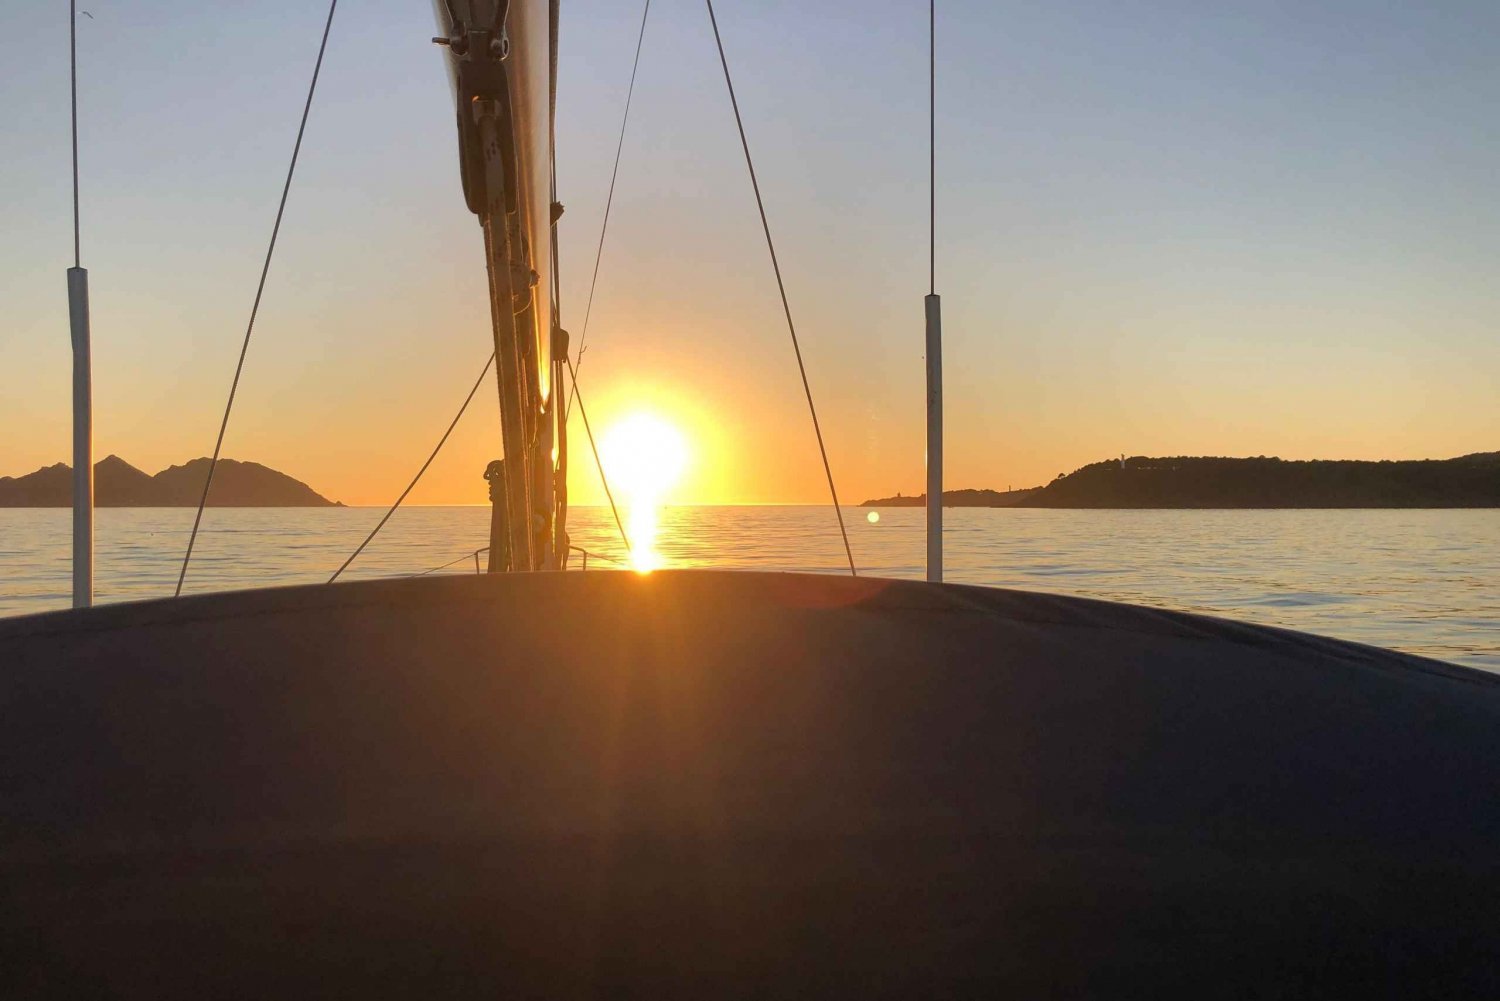 Solnedgång på en lyxig segelbåt - Lagos - Algarve